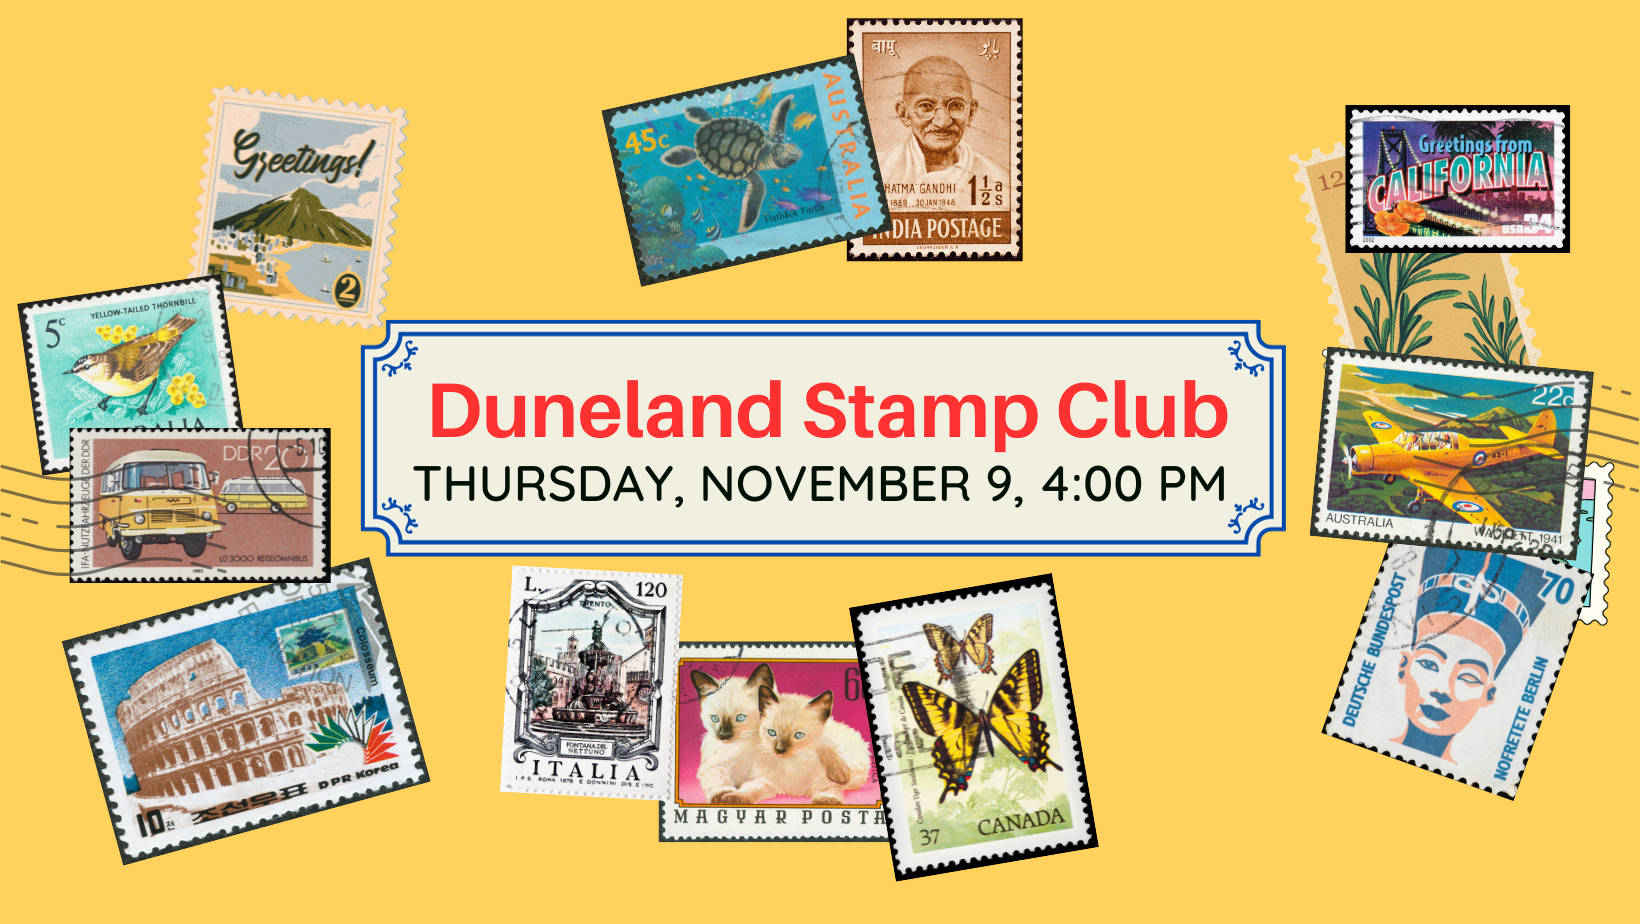 Duneland Stamp Club, Thursday, November 9, 4:00 pm